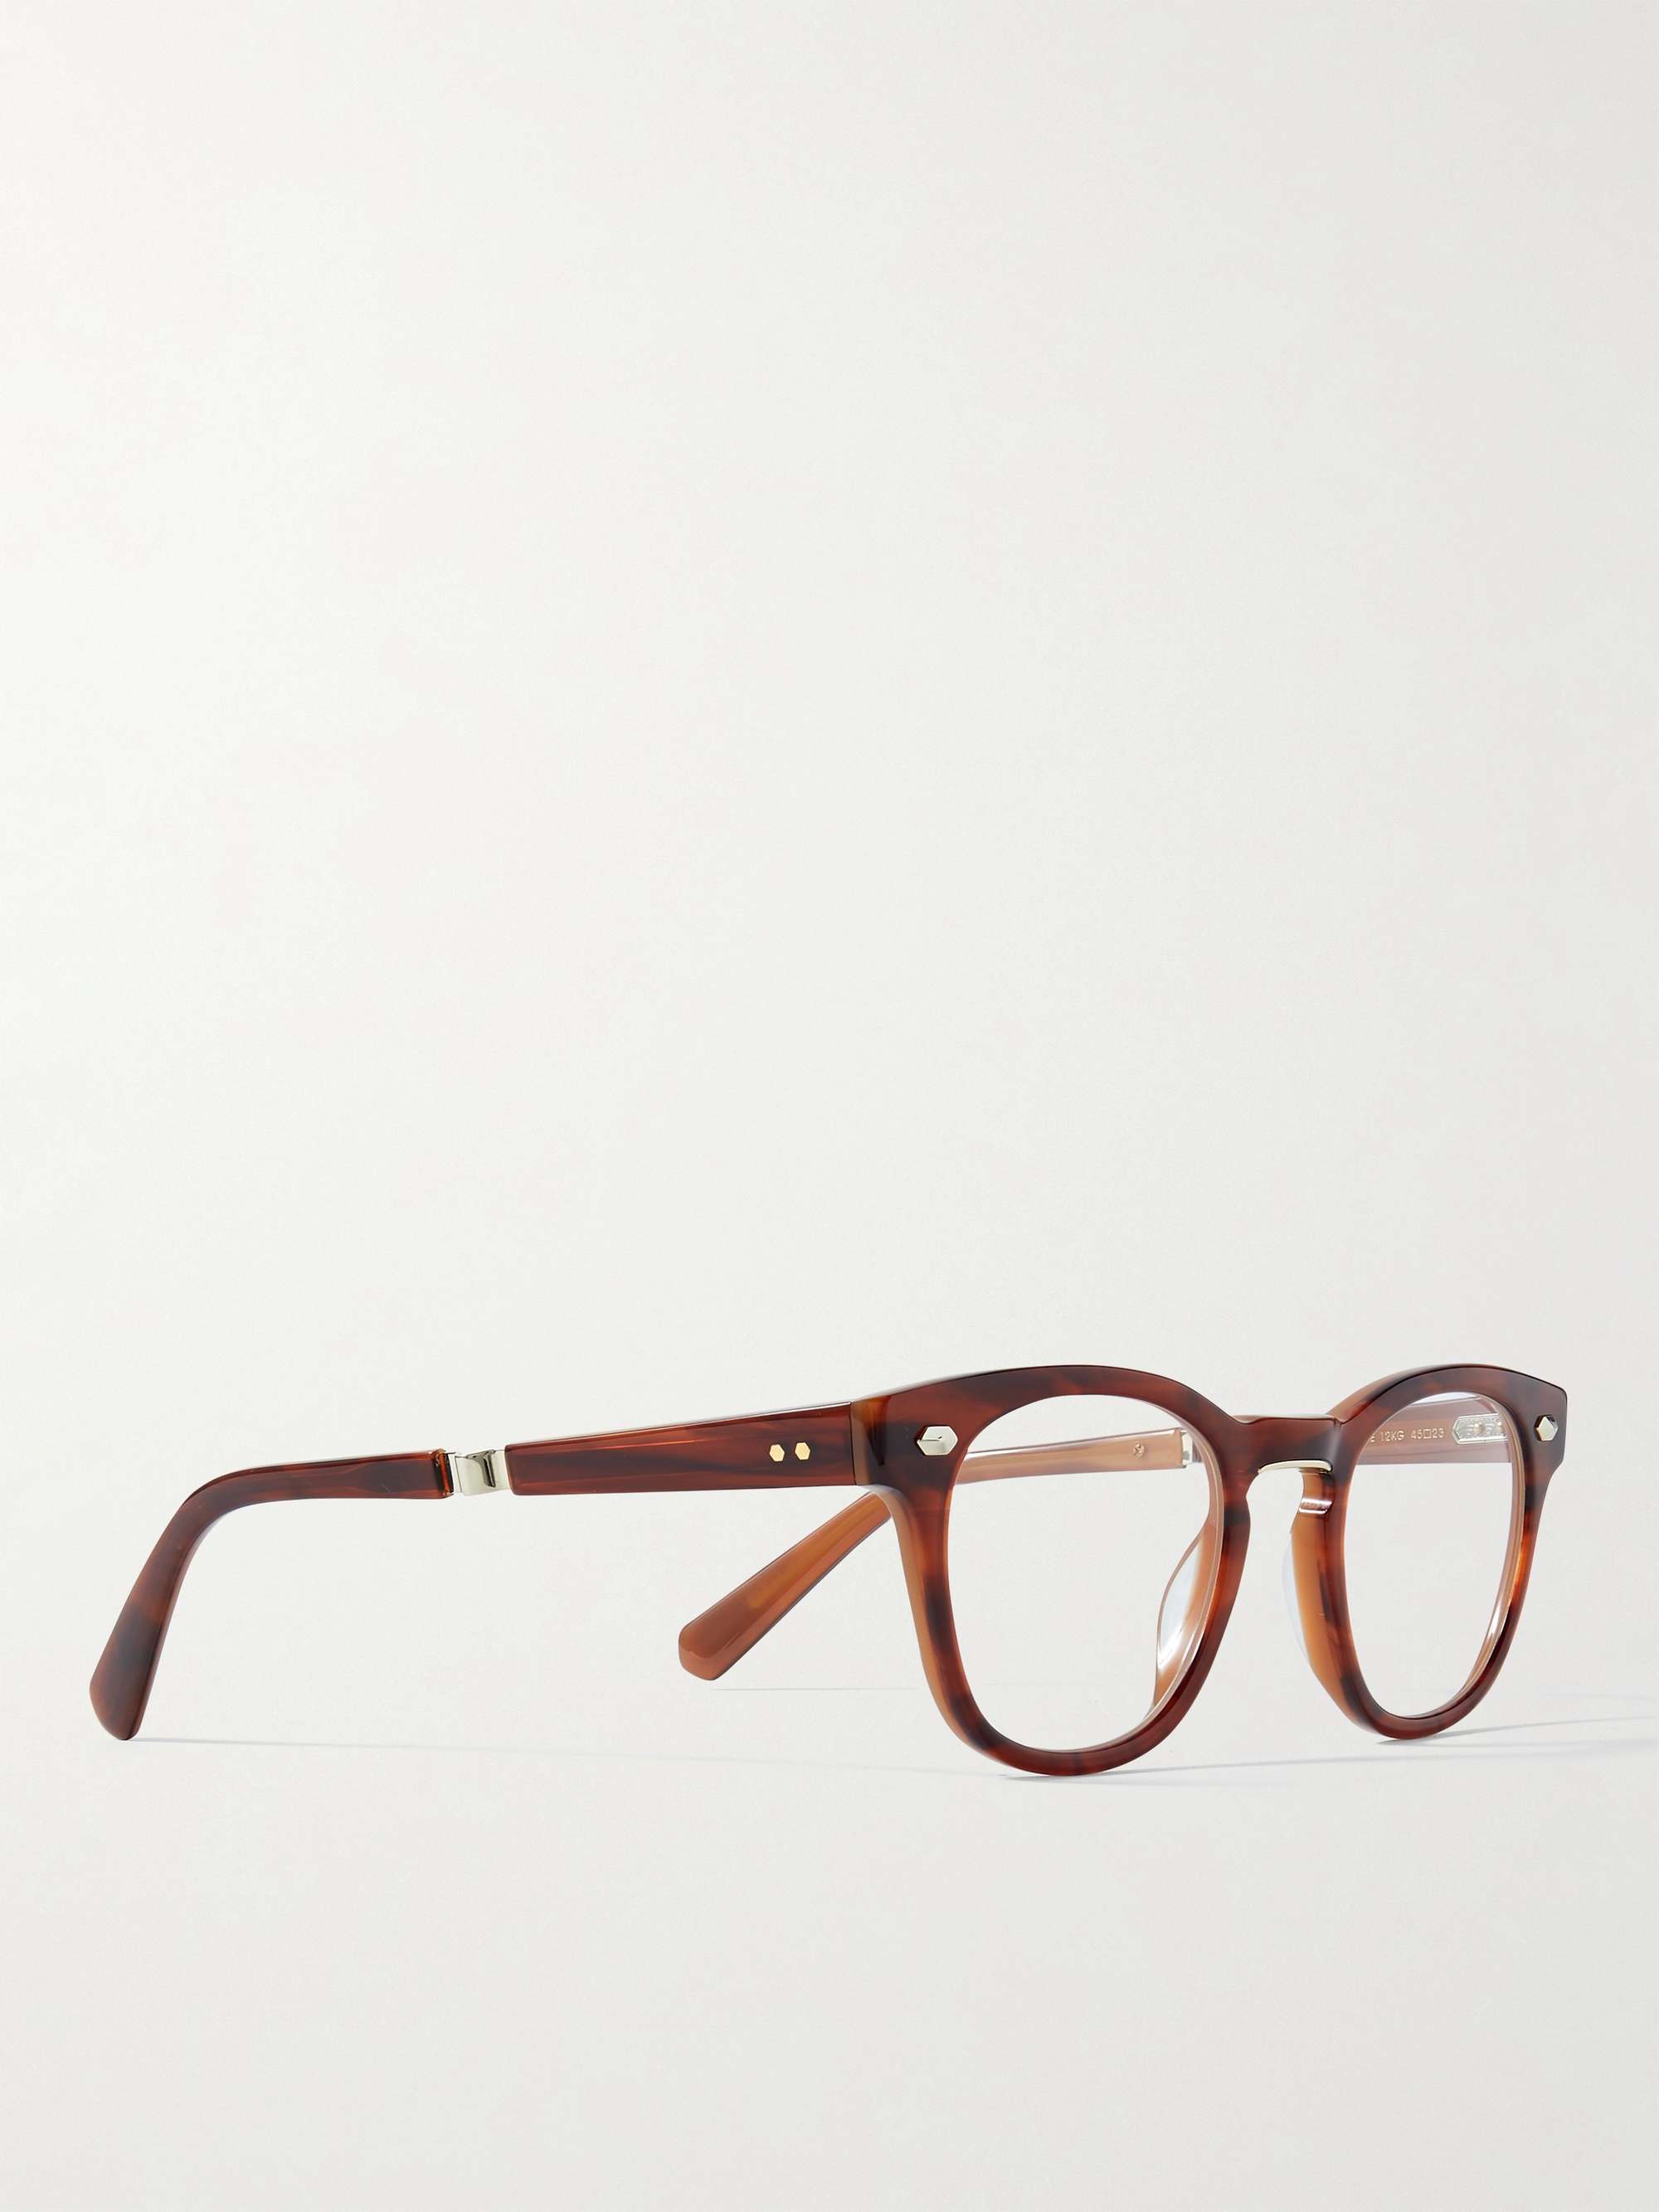 MR LEIGHT Hanalei C D-Frame Acetate and Titanium Optical Glasses